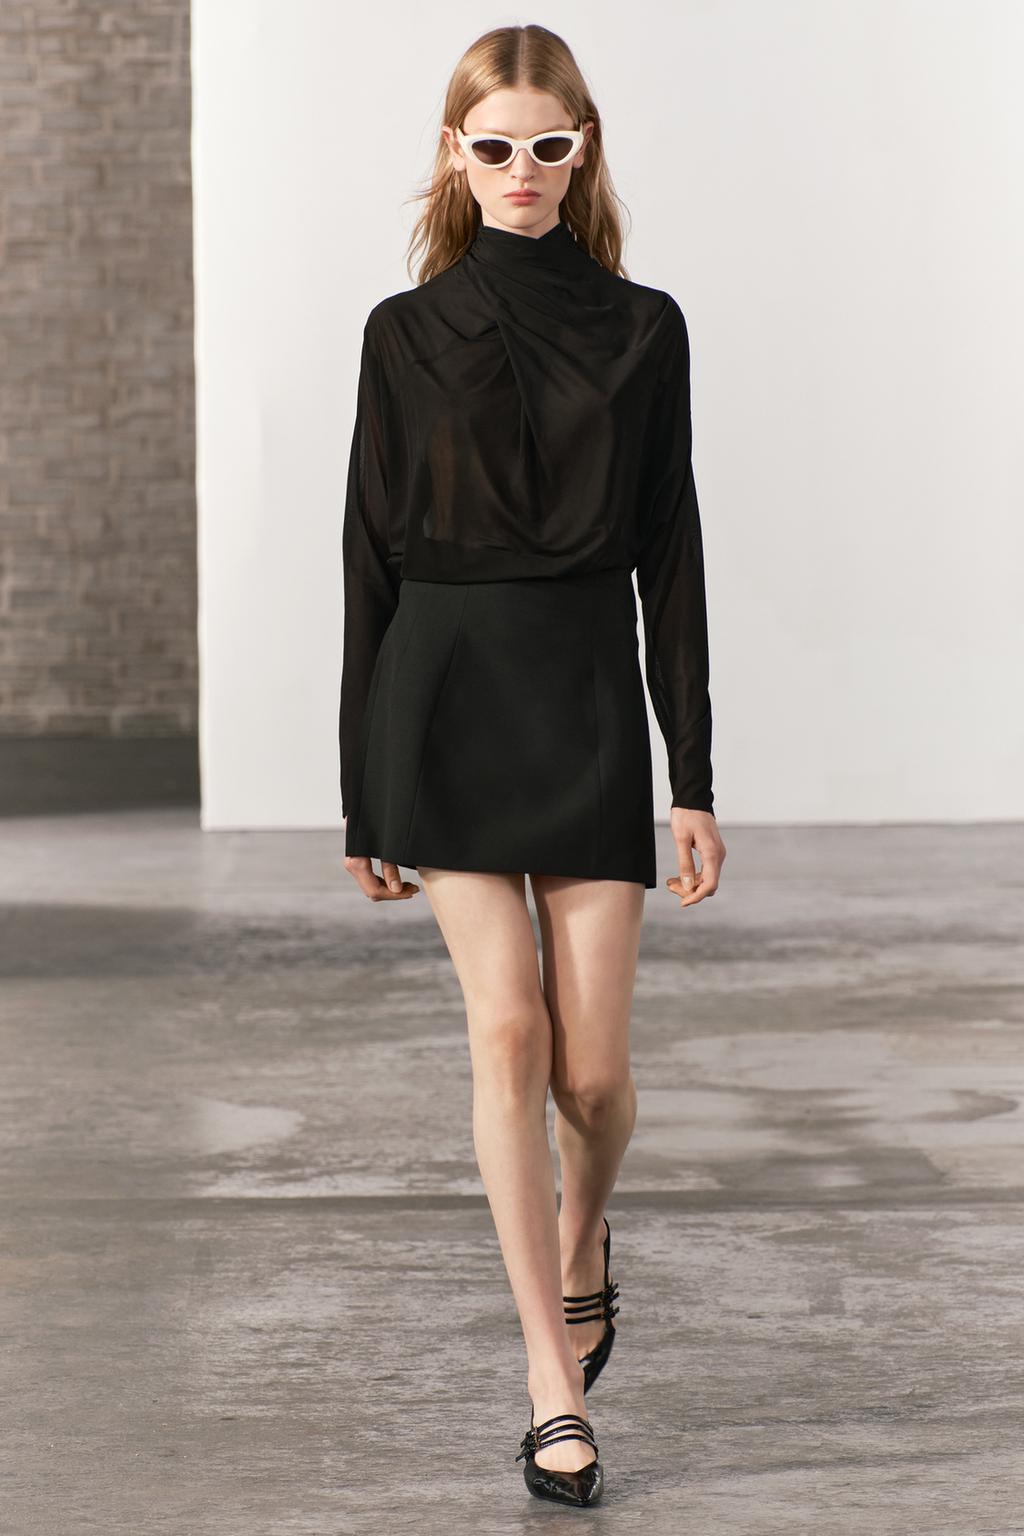 Мини-юбка с высокой посадкой ZARA, черный ассиметричная плиссированная мини юбка с оборками модная трапециевидная юбка с завышенной талией праздничная стильная юбка для женщин н